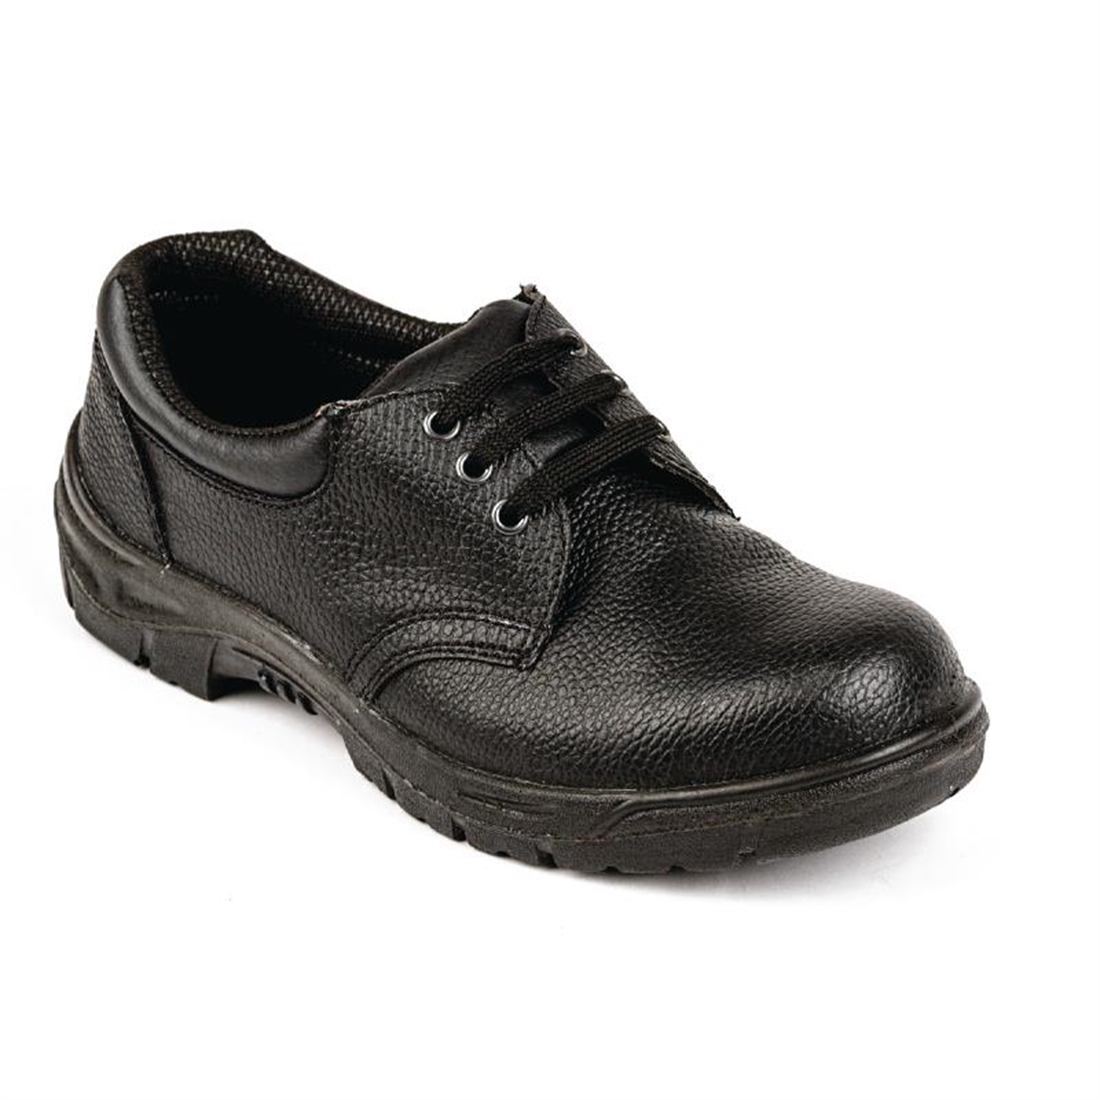 Slipbuster Unisex Safety Shoe Black 48